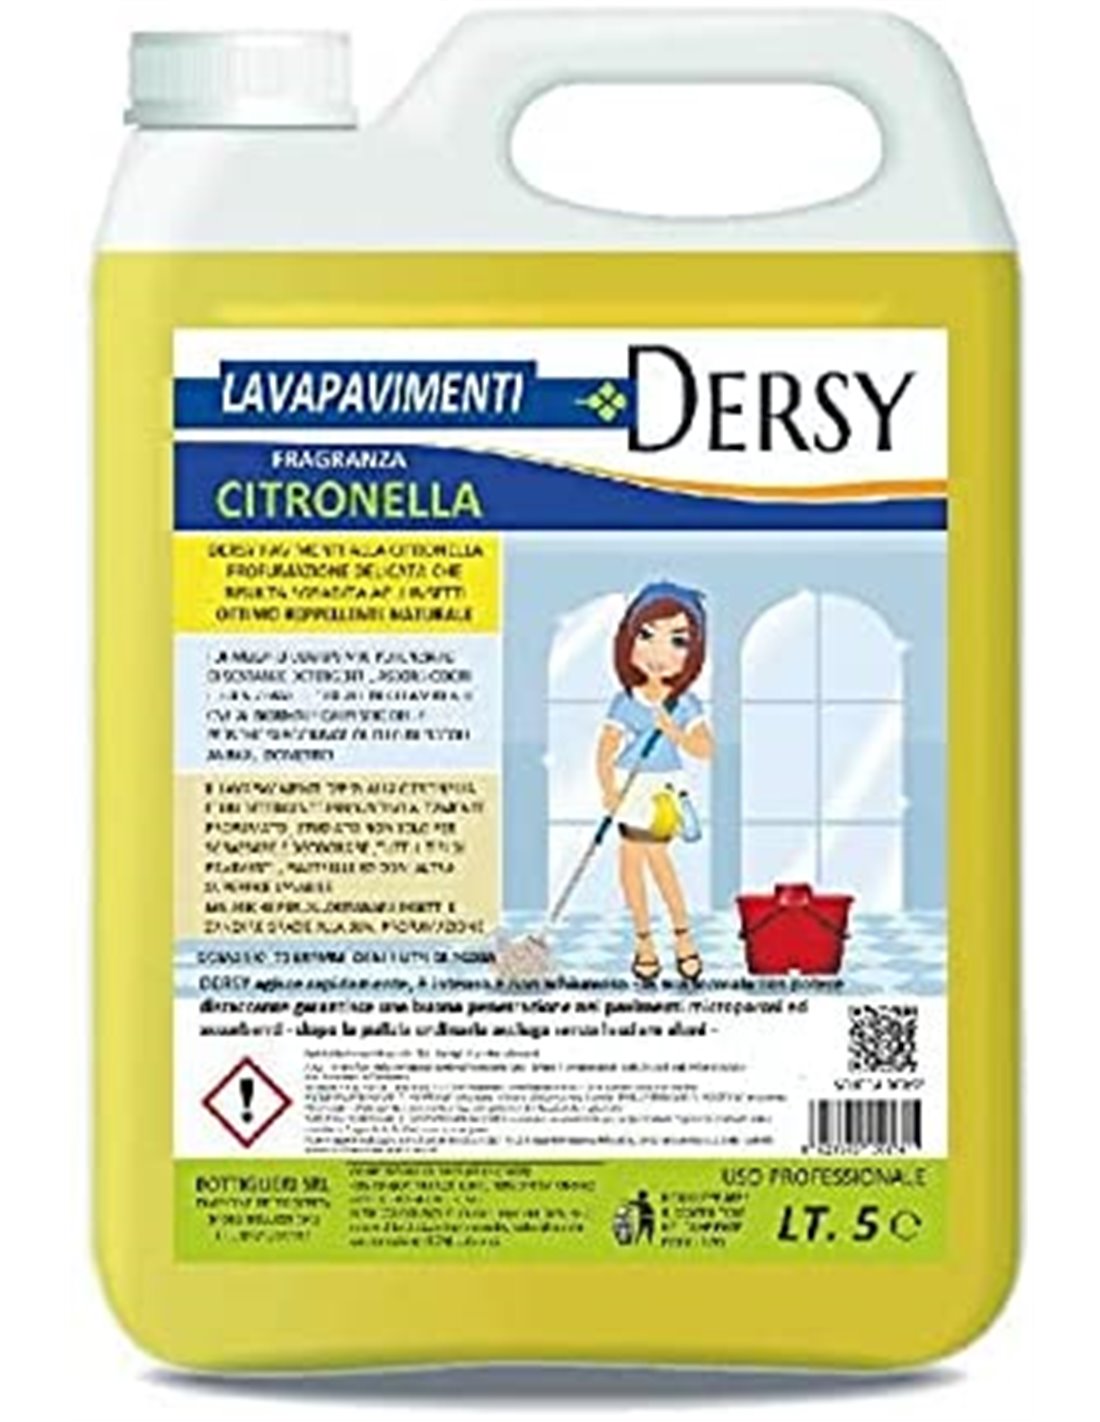 ELETTROCHIMICA DEL SELE Dersy Lavapavimenti Detergente Super Profumato alla  Citronella lt 5 Professionale Repellente, allontana